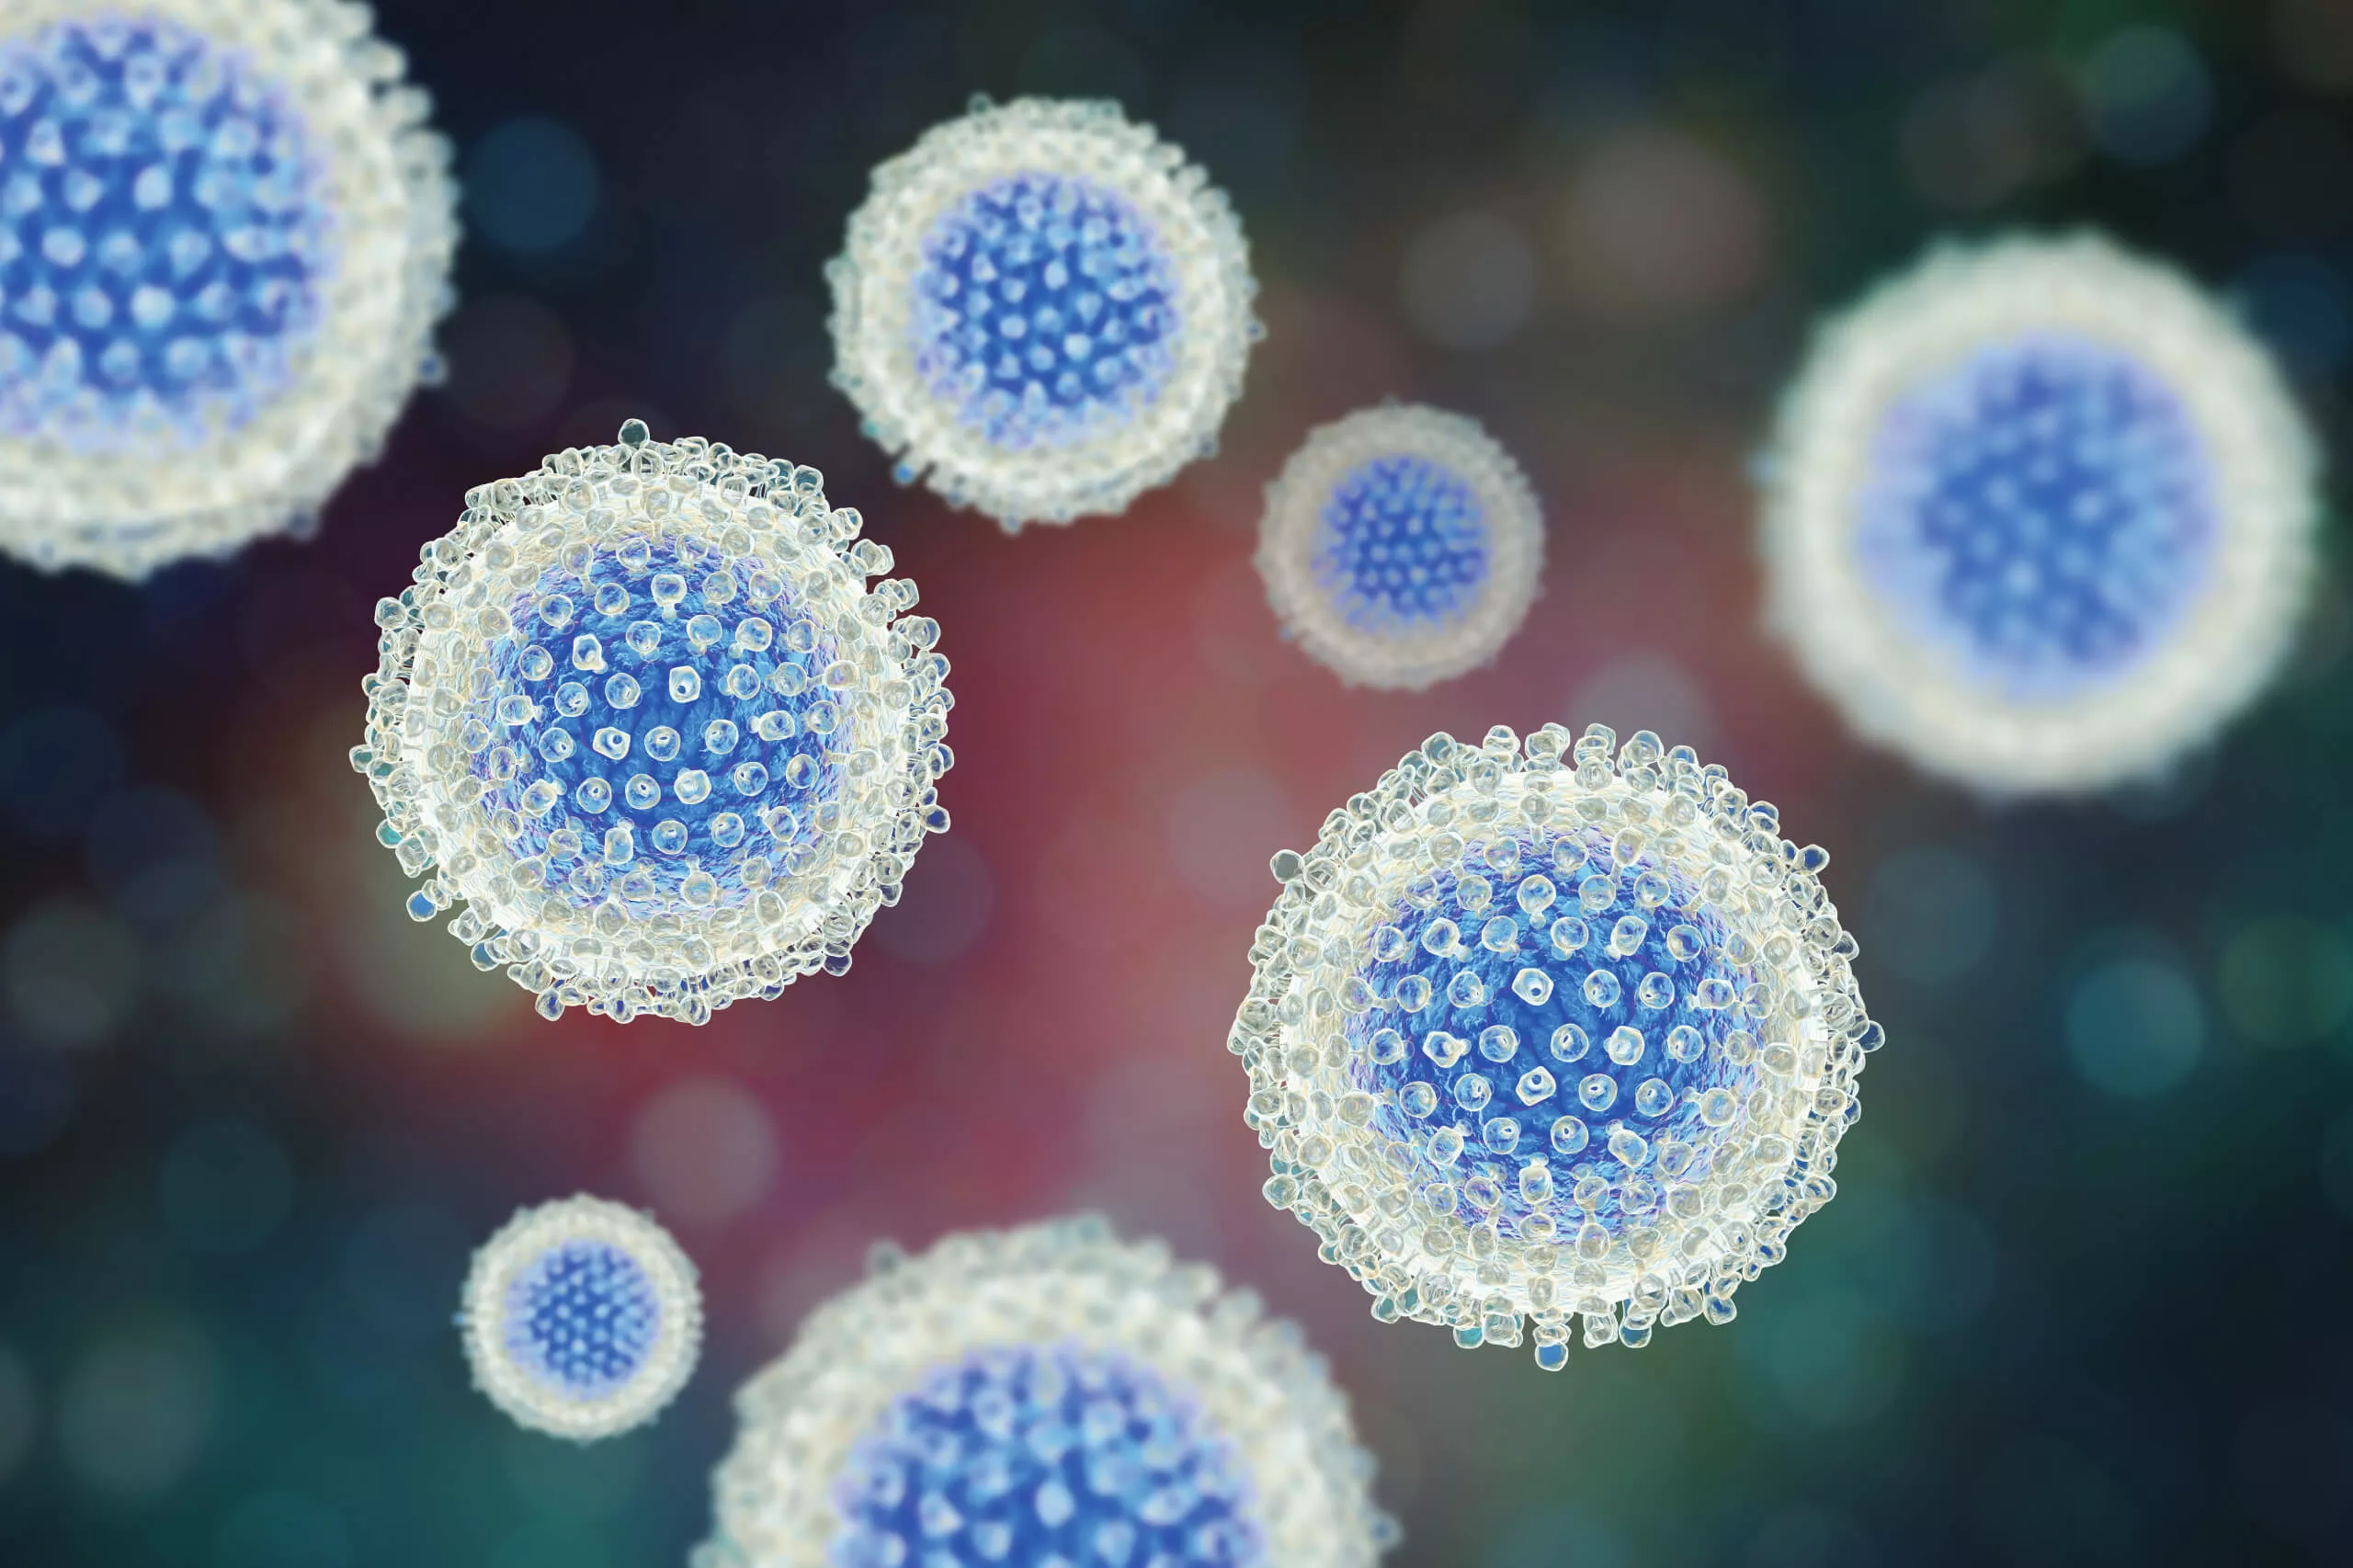 Image of Hepatitis B virus (HBV)